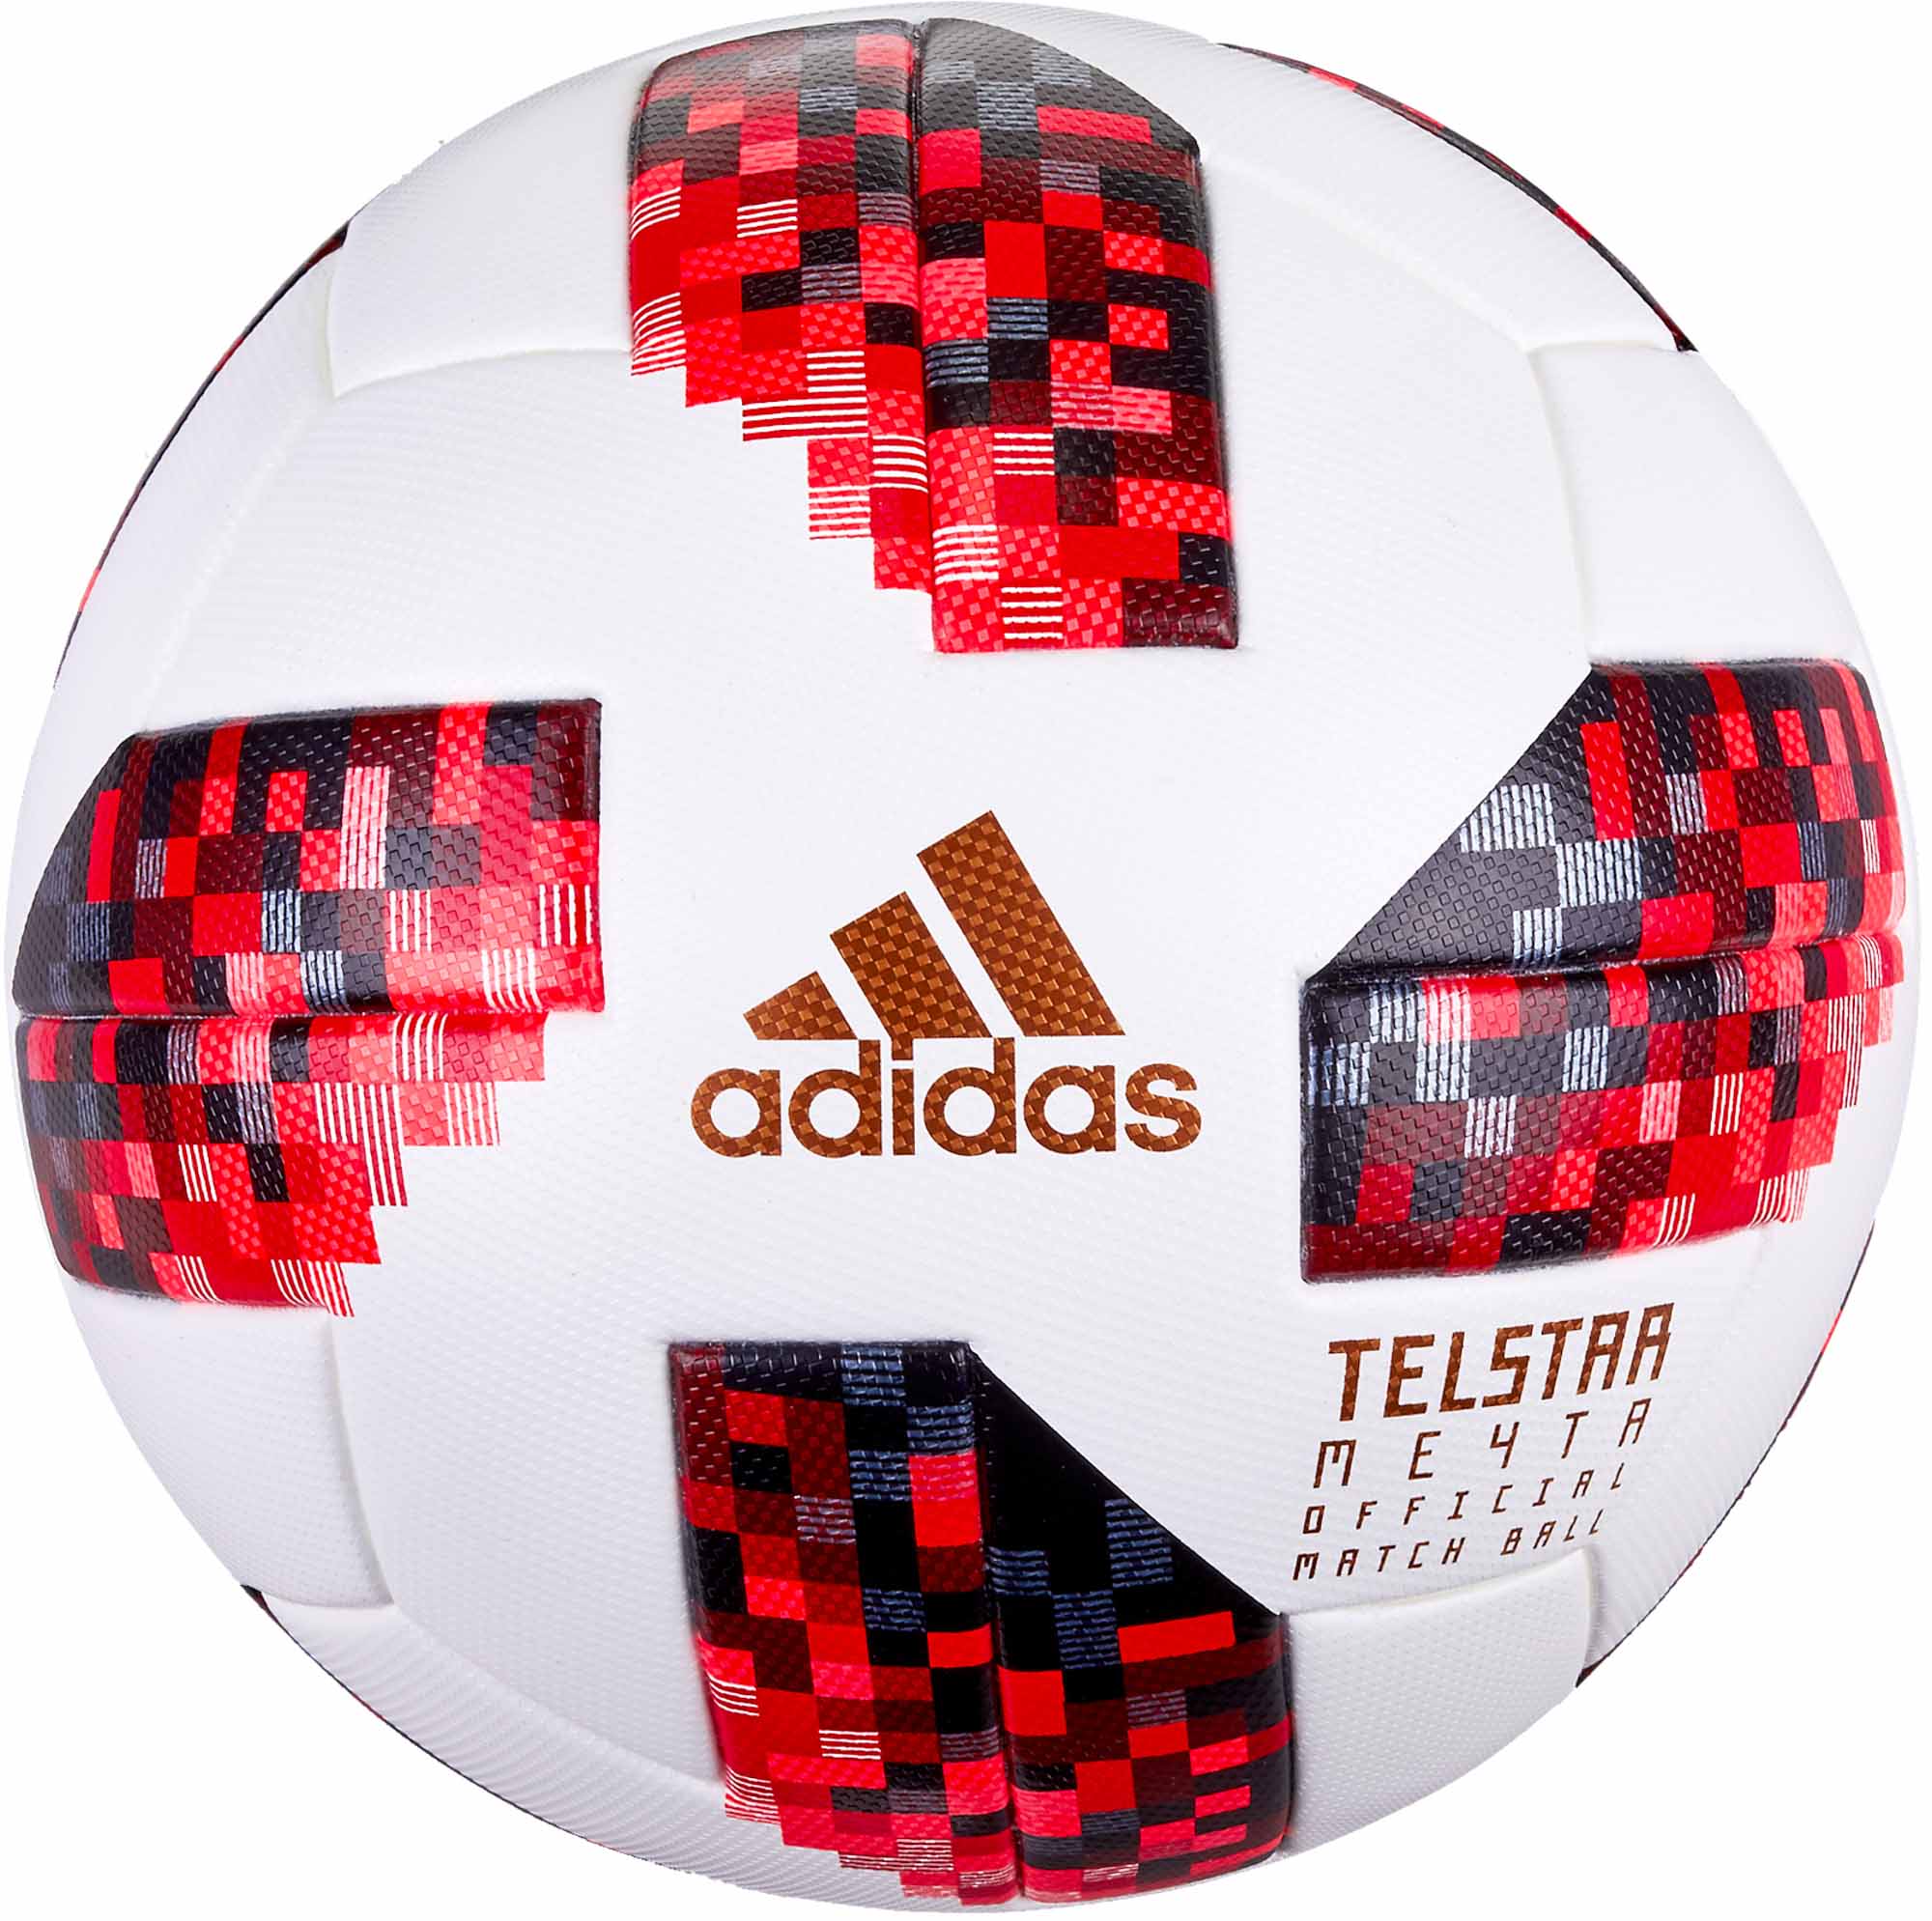 adidas official world cup match ball